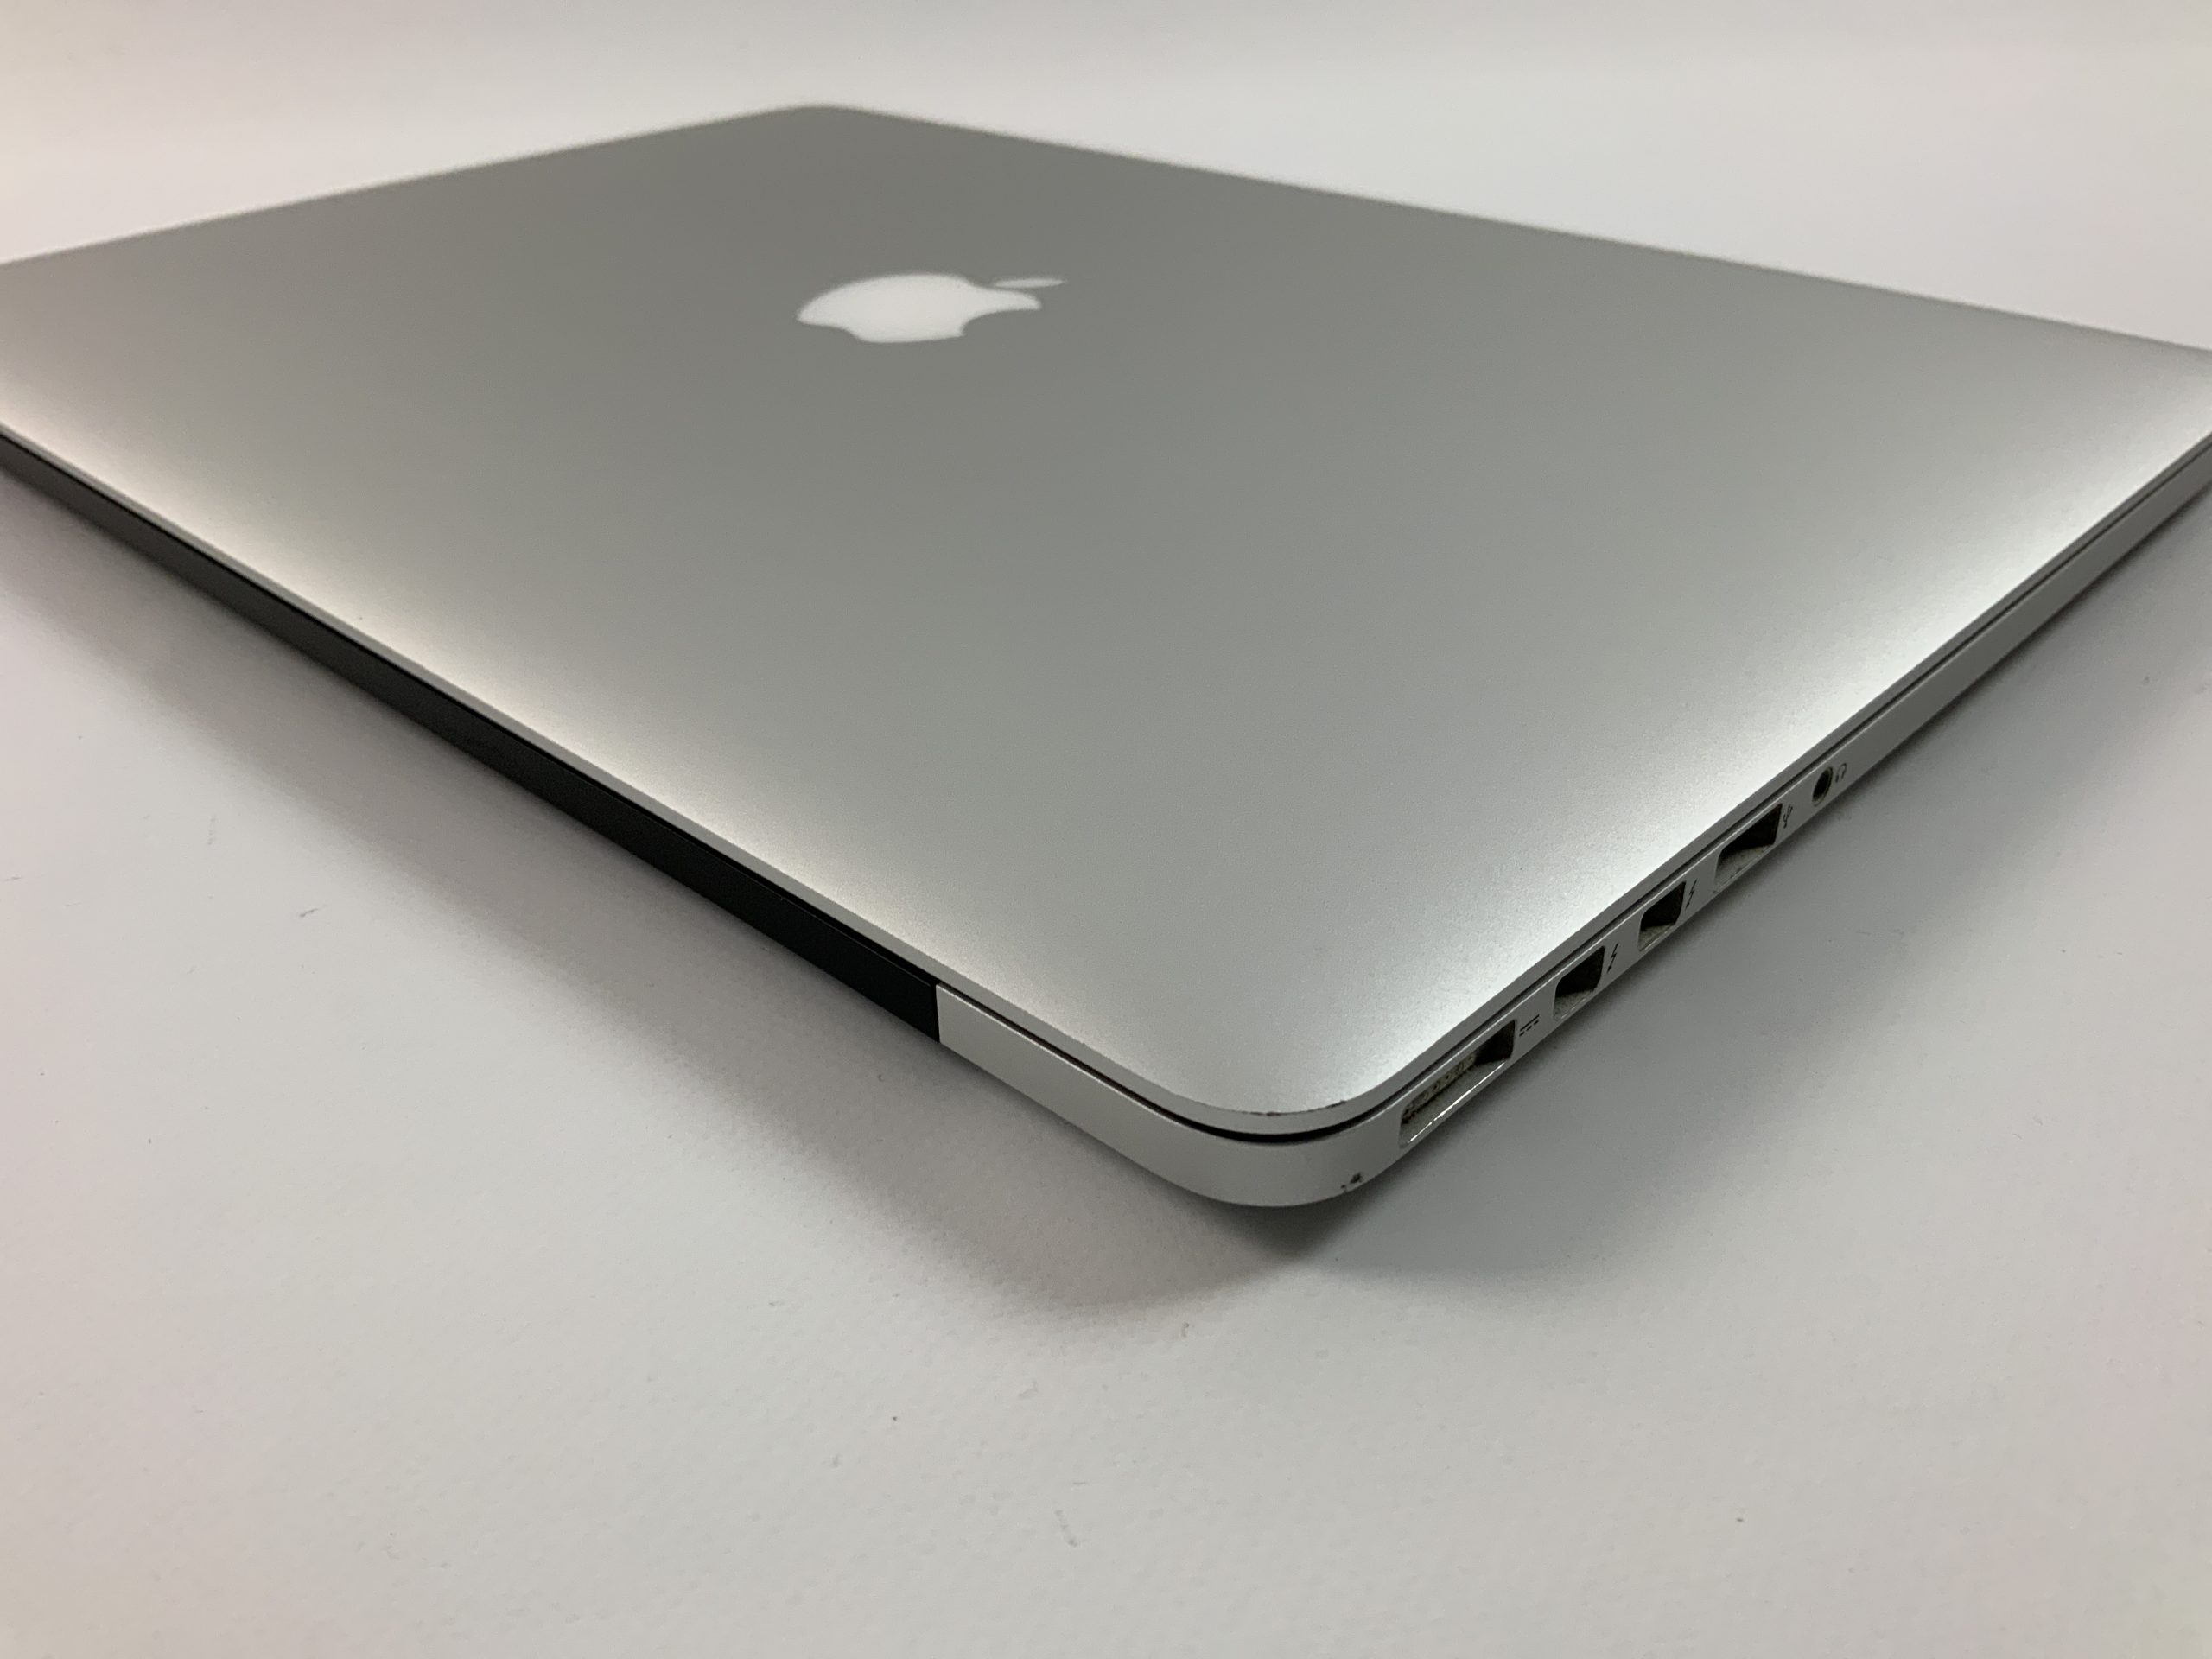 MacBook Pro Retina 15" Mid 2015 (Intel Quad-Core i7 2.8 GHz 16 GB RAM 512 GB SSD), Intel Quad-Core i7 2.8 GHz, 16 GB RAM, 512 GB SSD, Afbeelding 3